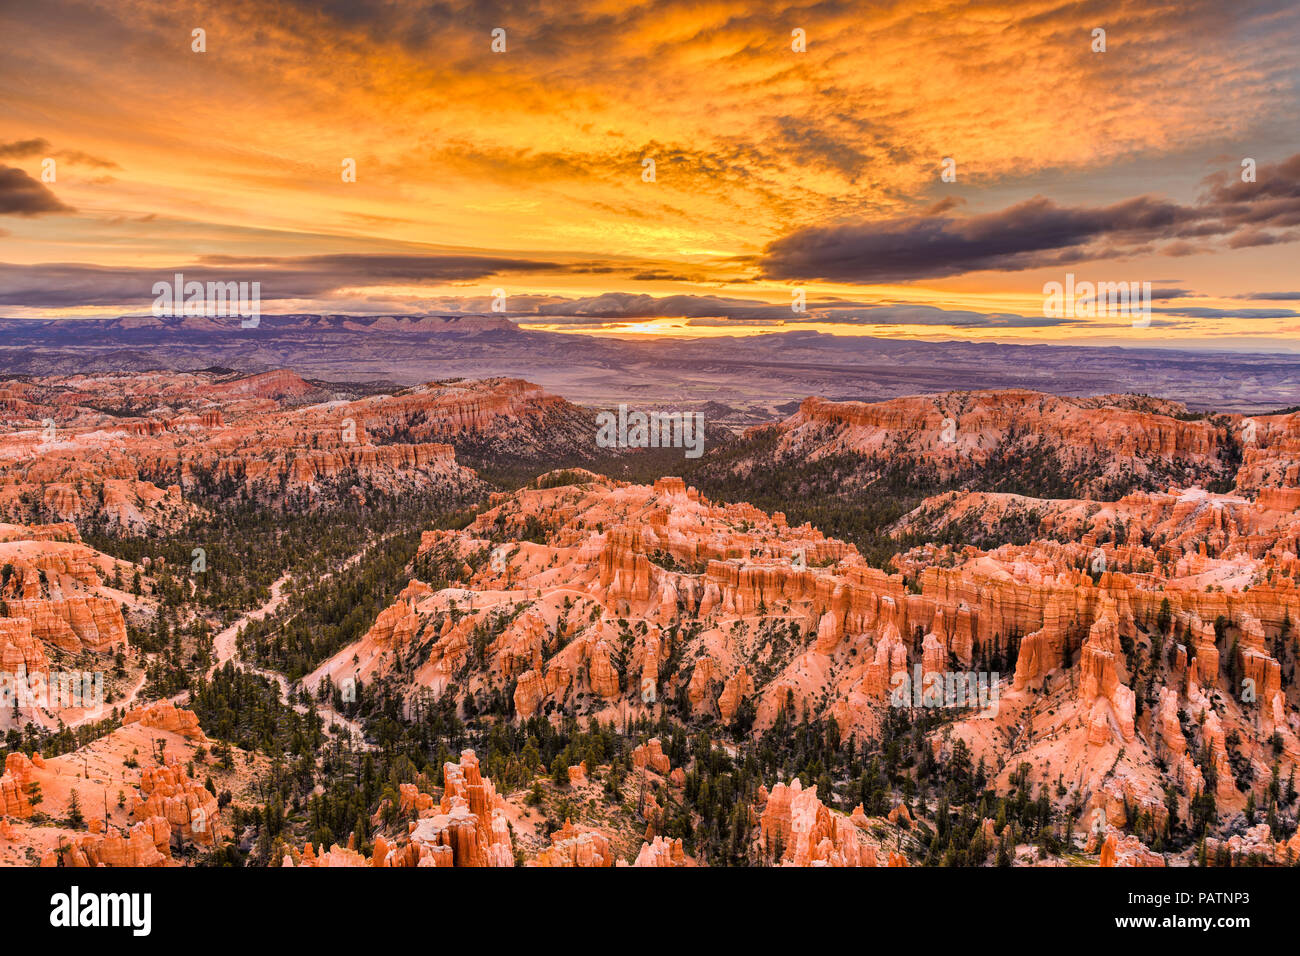 Bryce Canyon National Park, Utah, USA at dawn. Stock Photo